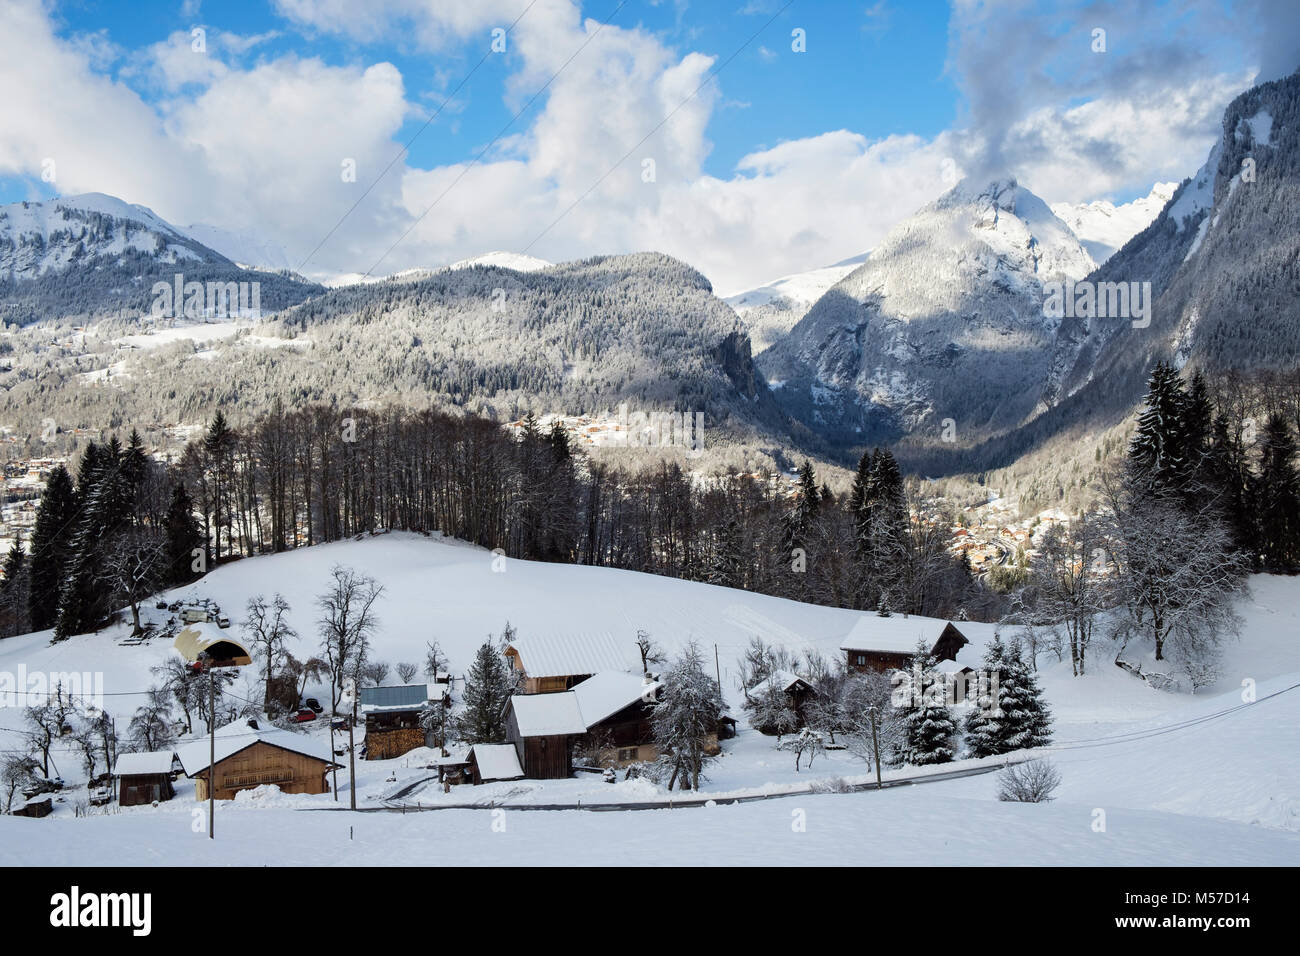 Blick über traditionelle Chalets am Berghang mit Winterschnee auf den Bergen in den französischen Alpen über dem Dorf Samoens, Vallée du Giffre, Frankreich, EU Stockfoto